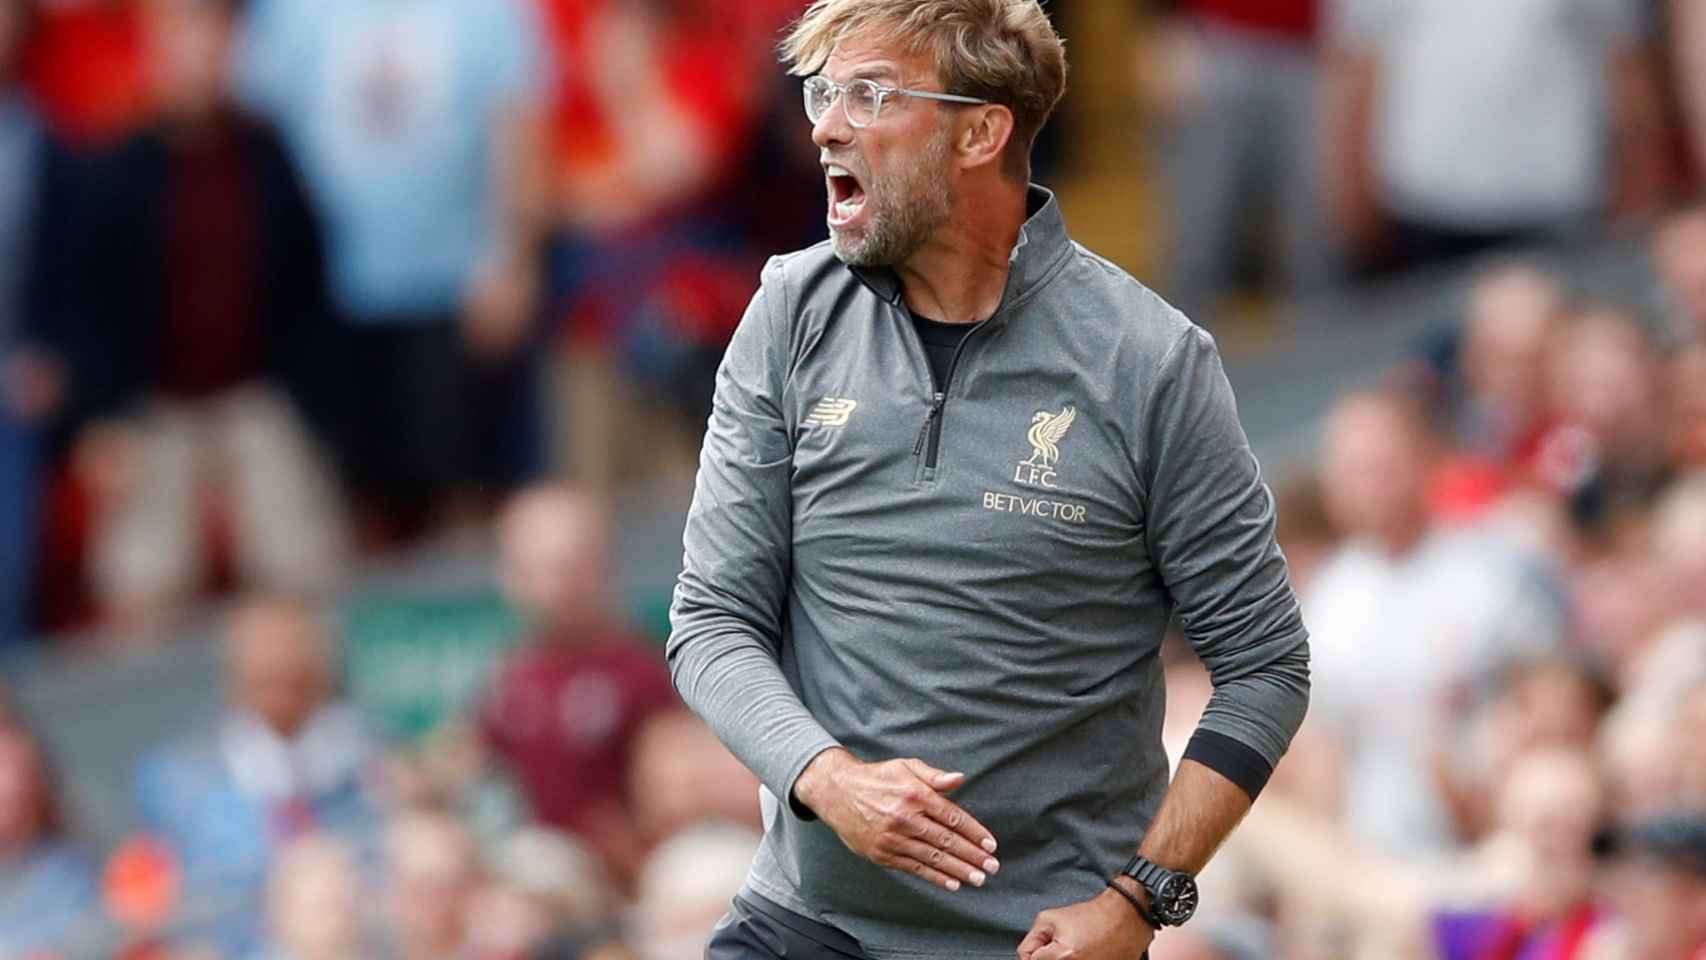 Klopp, entrenador del Liverpool, gesticulando durante un partido